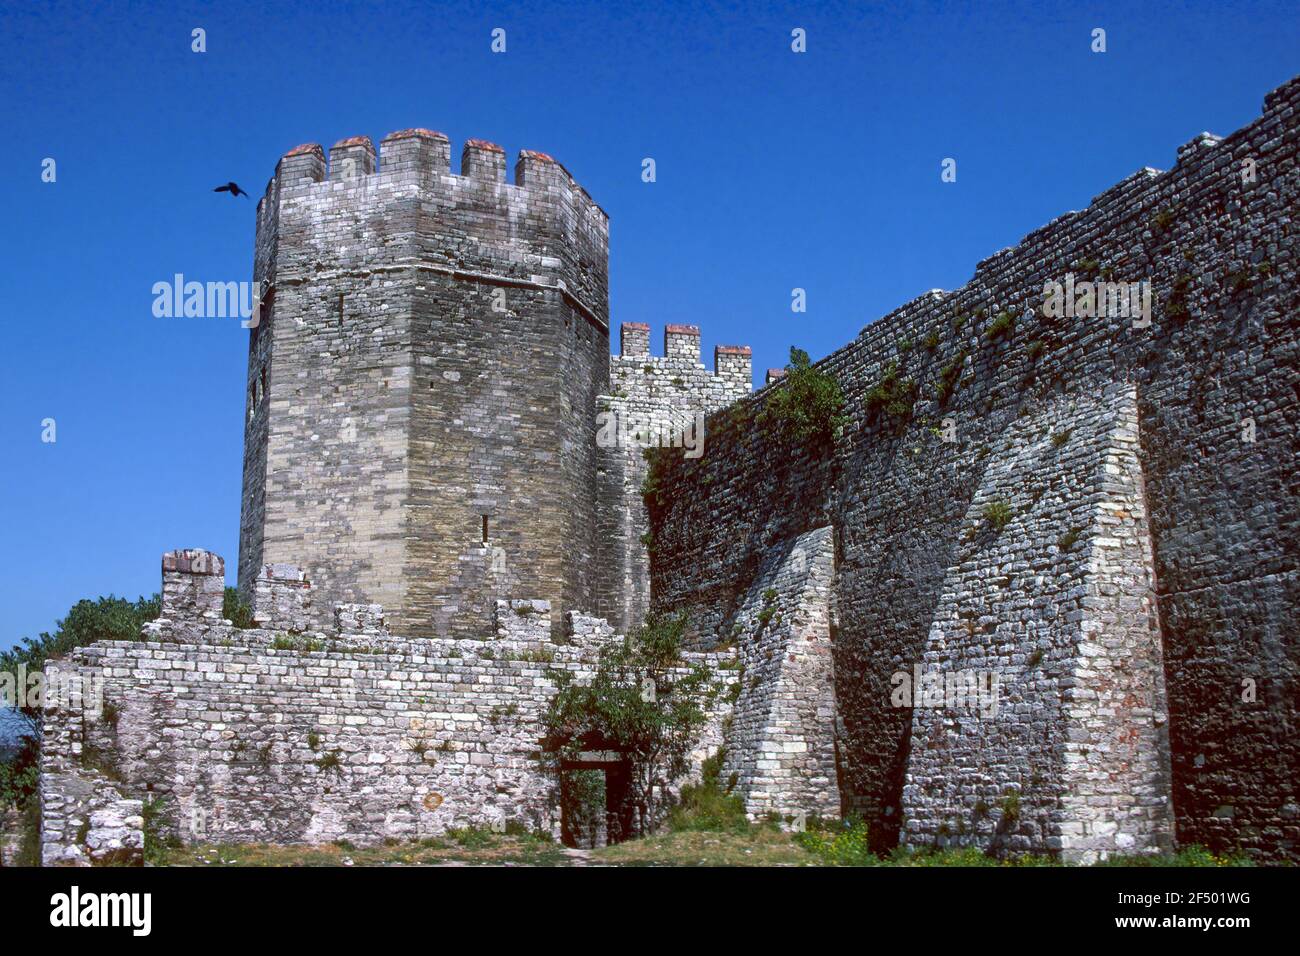 Festung Yedikule einer von sieben Türmen Istanbul Türkei Stockfoto